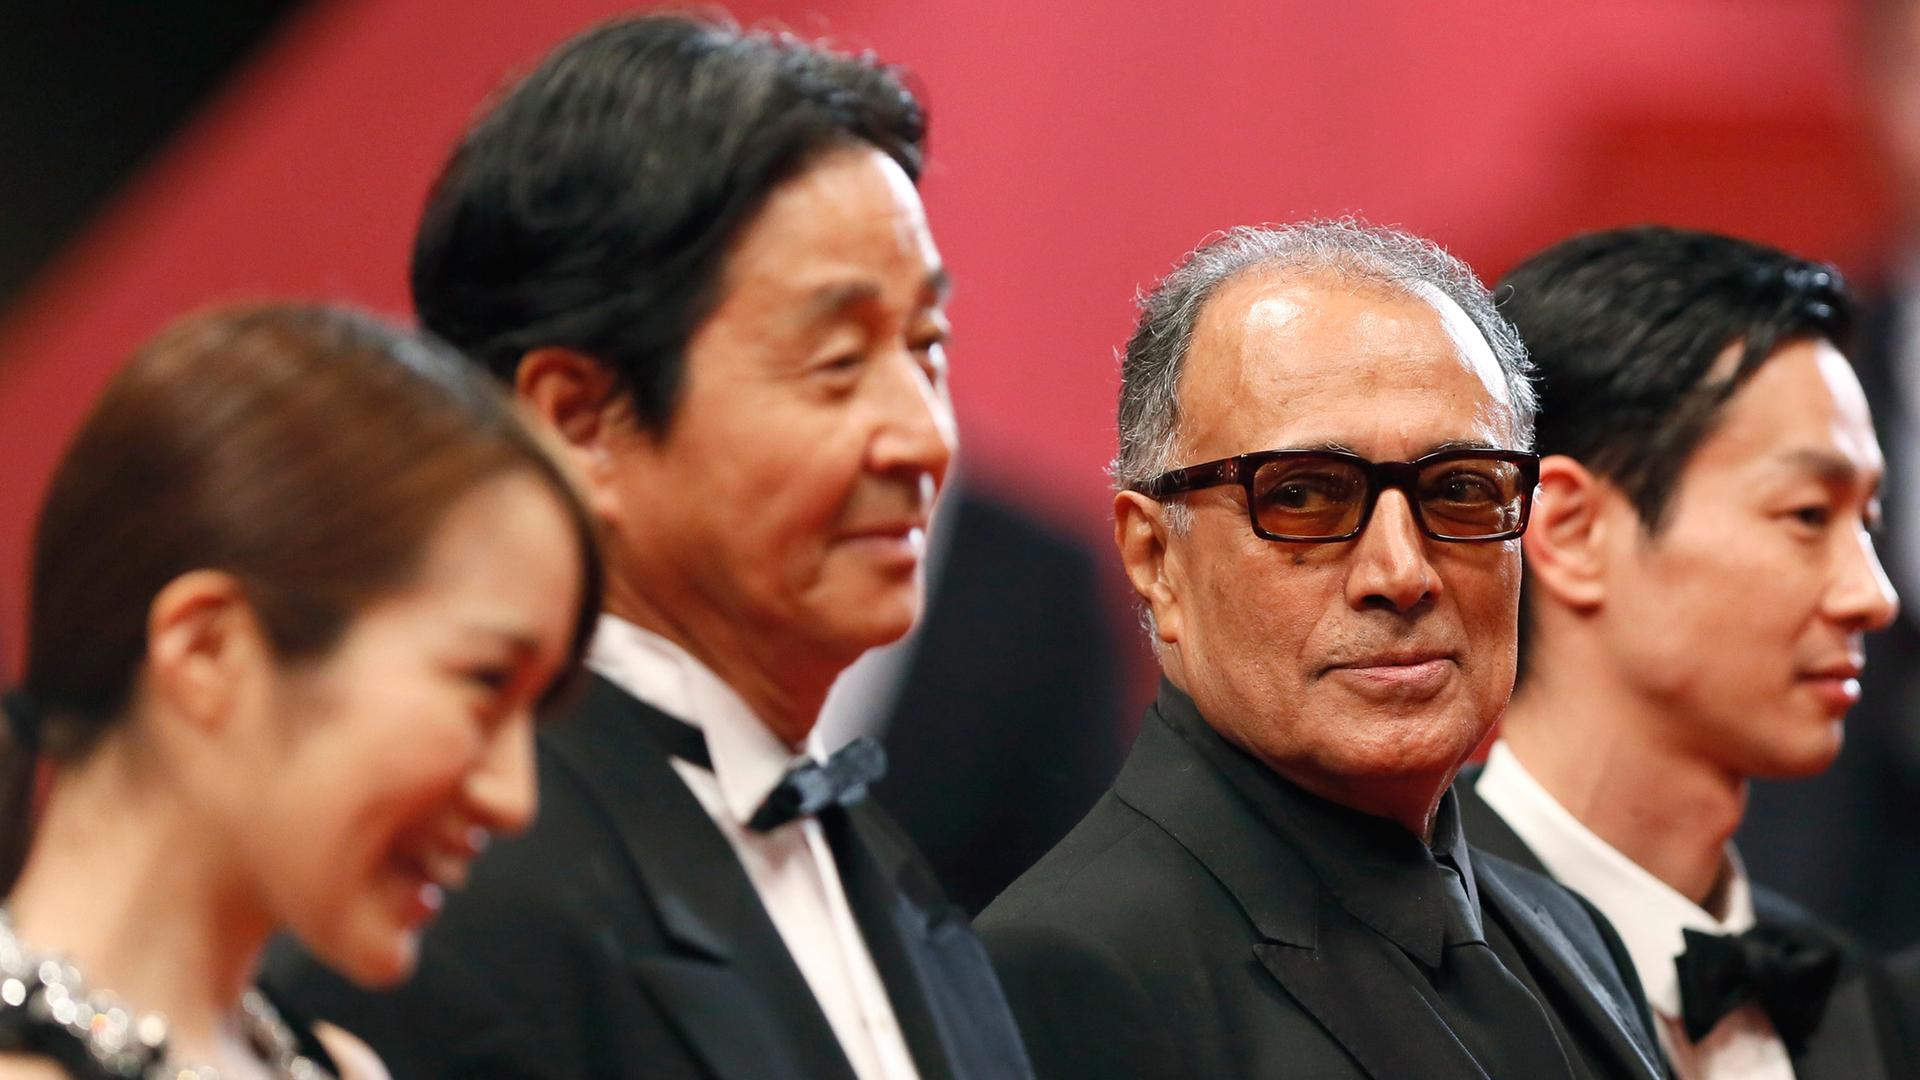 Abbas Kiarostami (2. v. r.) mit seinem Team bei den Filmfestspielen von Cannes